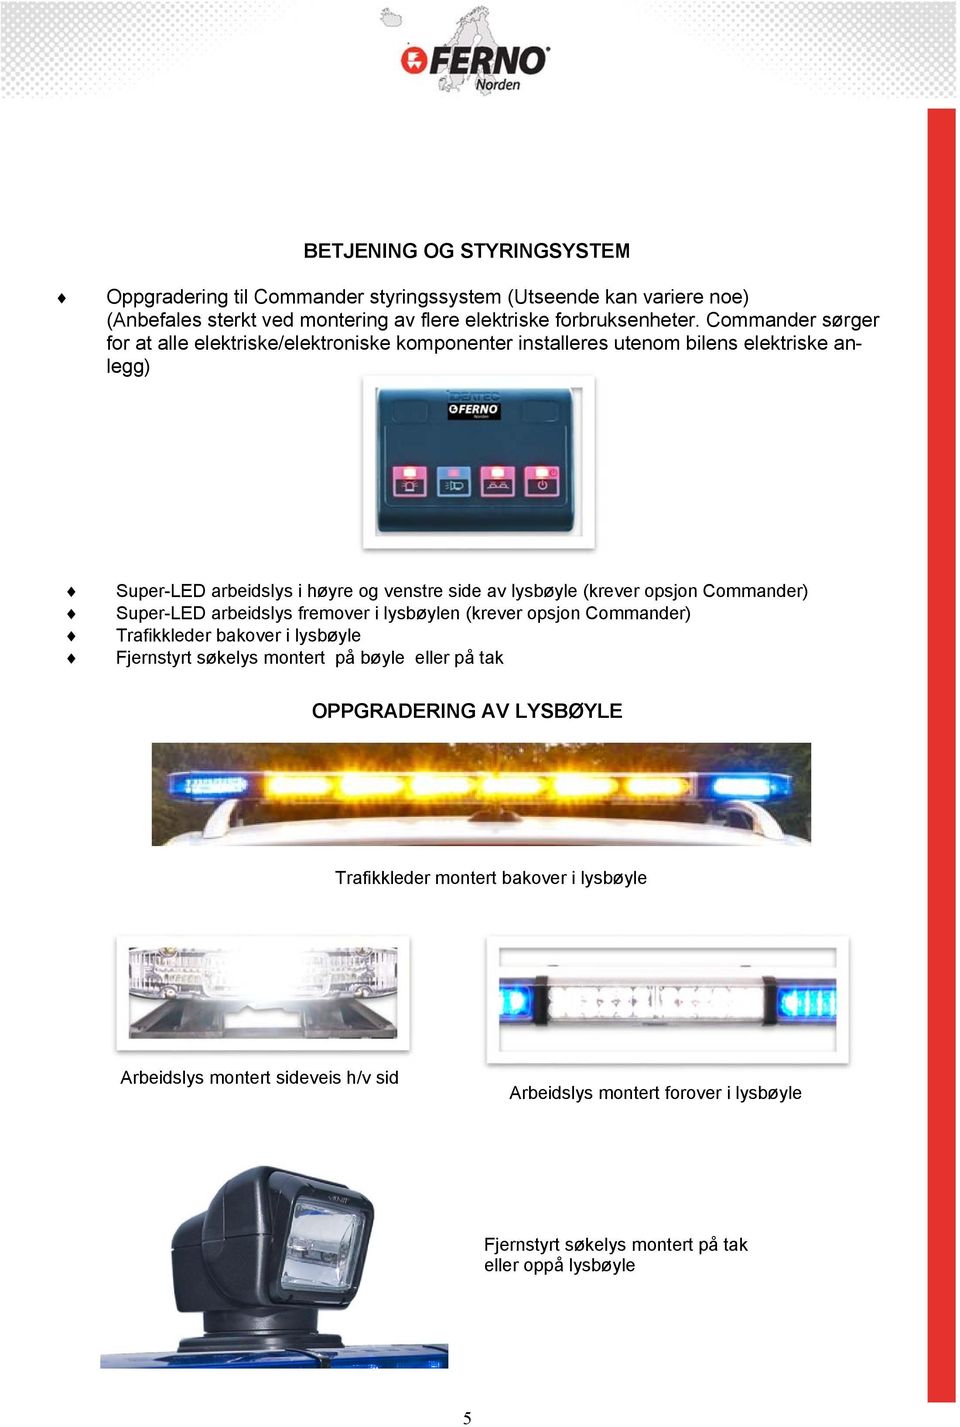 opsjon Commander) Super-LED arbeidslys fremover i lysbøylen (krever opsjon Commander) Trafikkleder bakover i lysbøyle Fjernstyrt søkelys montert på bøyle eller på tak